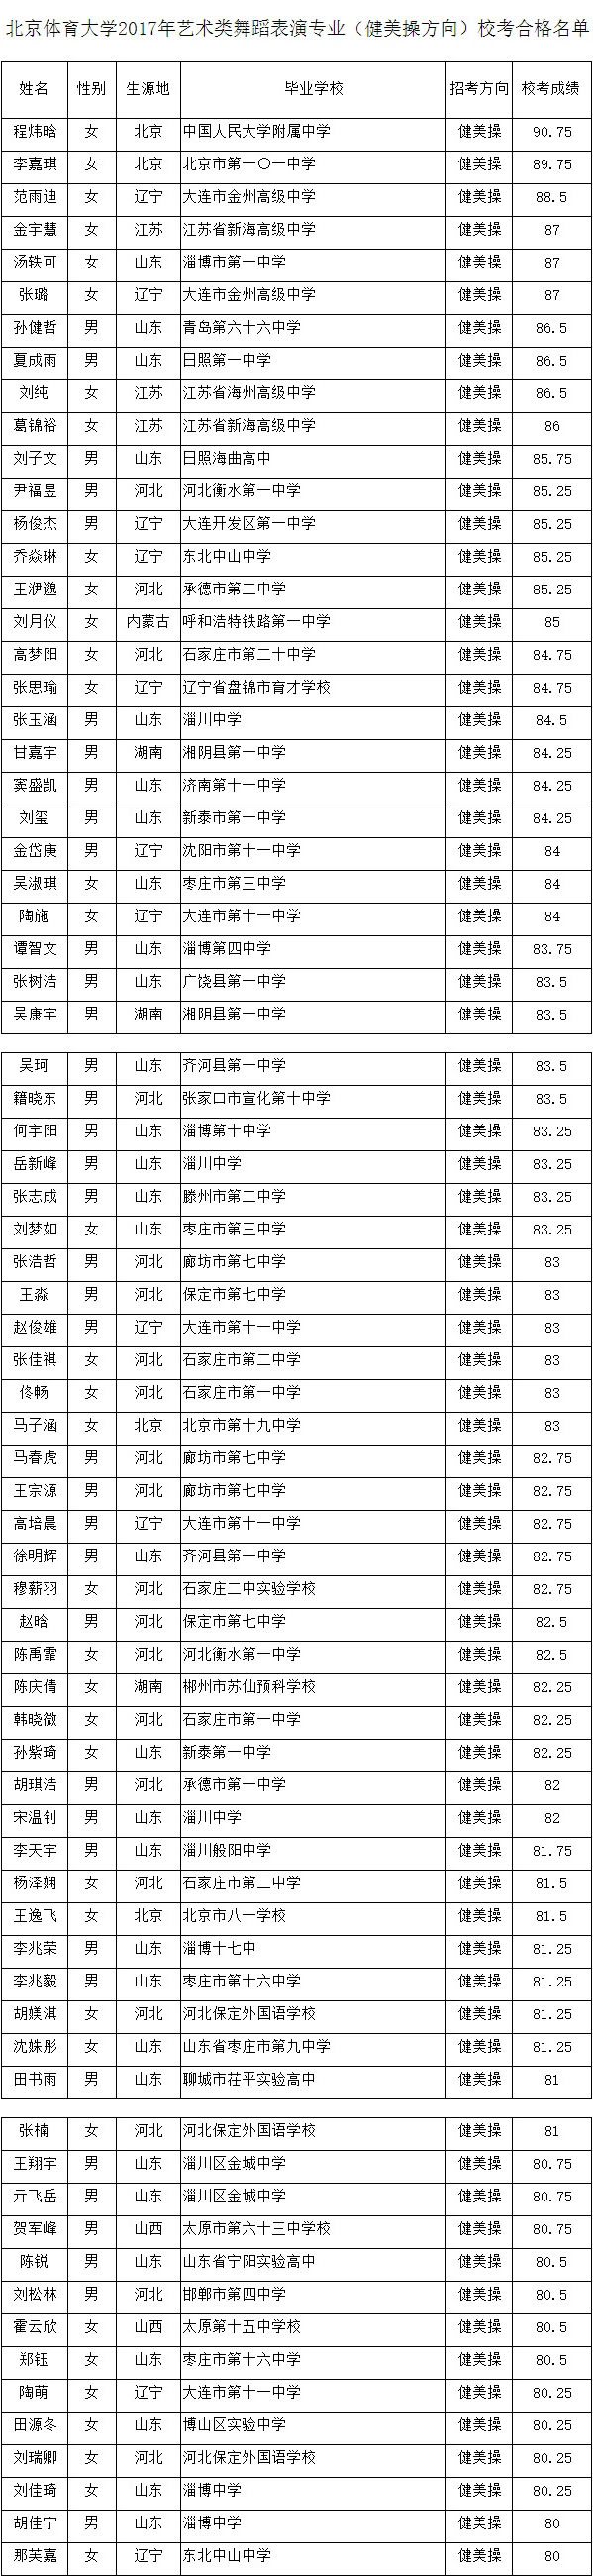 2017年北京体育大学舞蹈表演(健美操方向)校考合格名单.jpg